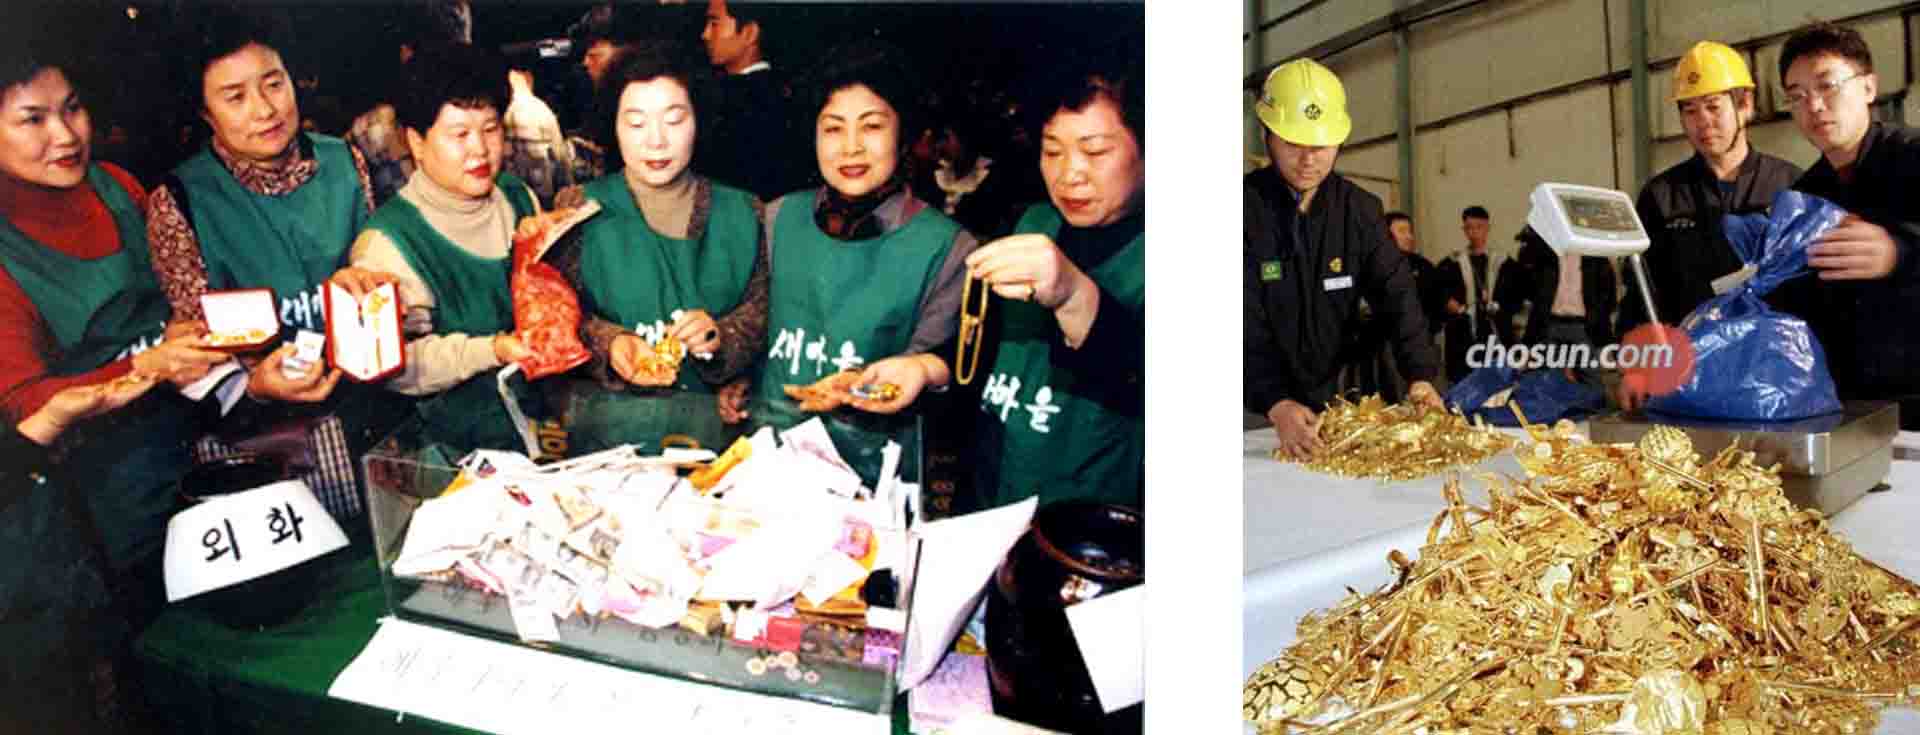 جنبش جمع آوری طلا در کره جنوبی 1997